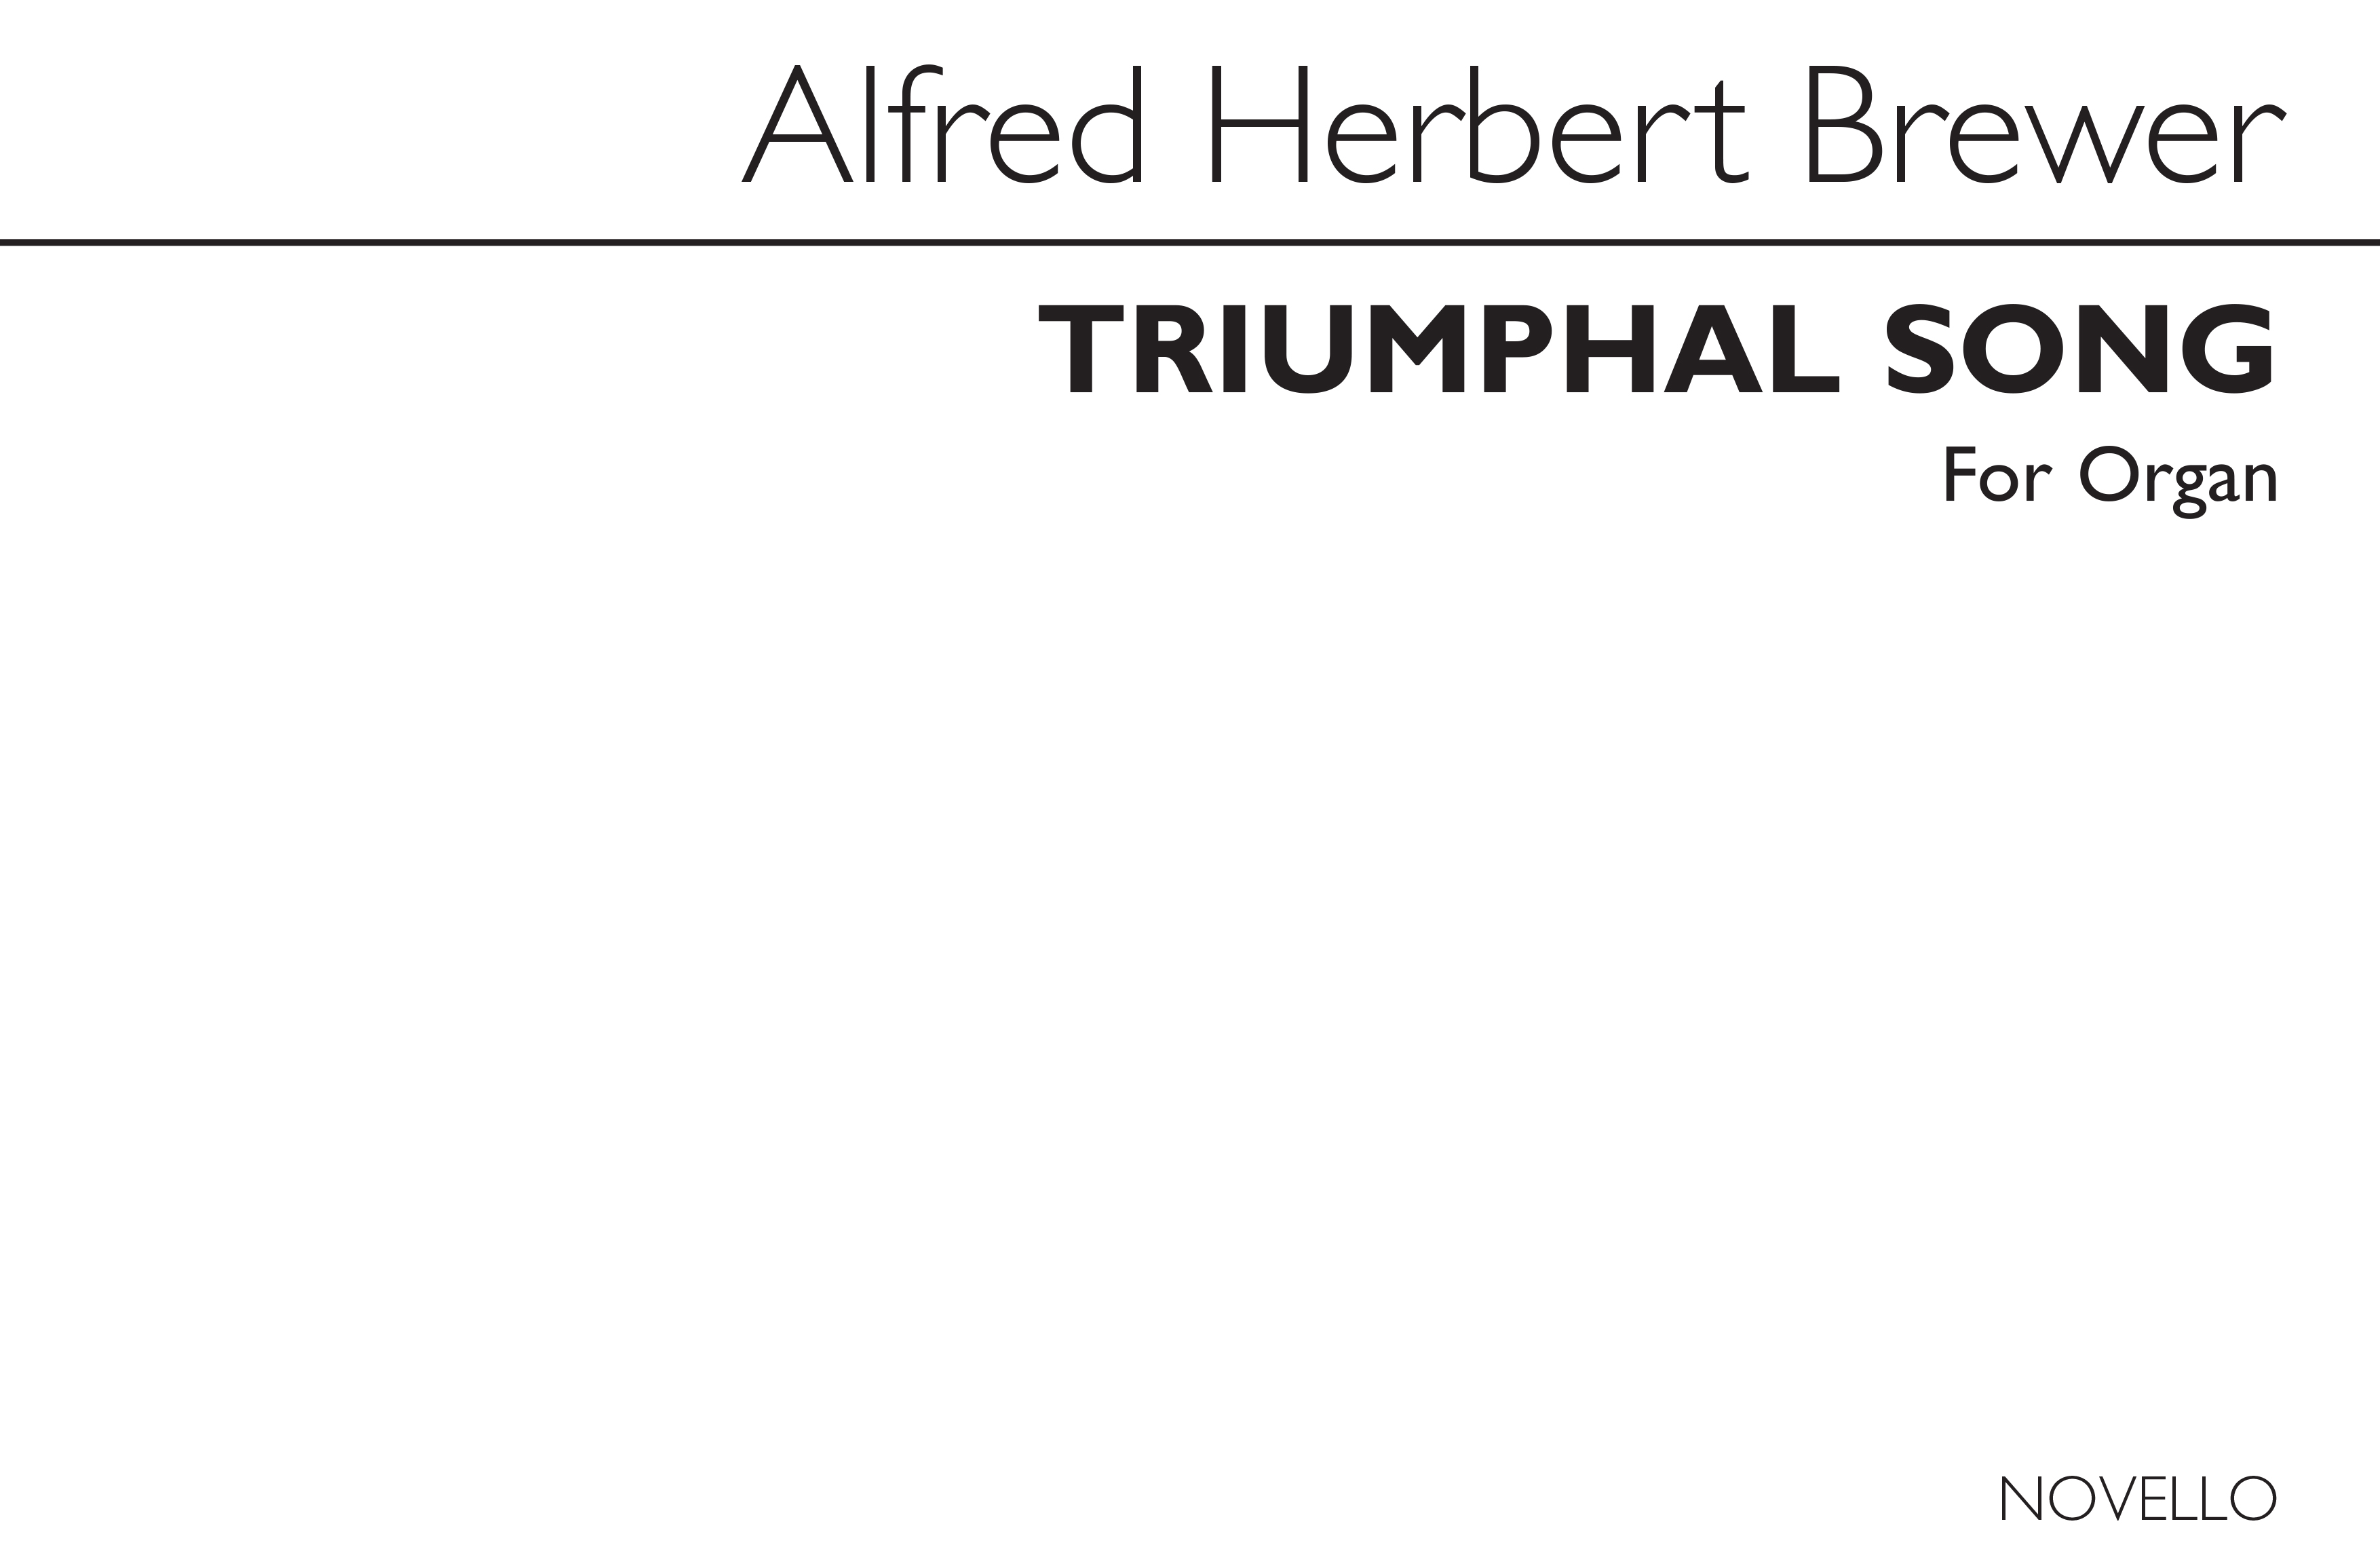 A. Herbert Brewer: Triumphal Song For Organ